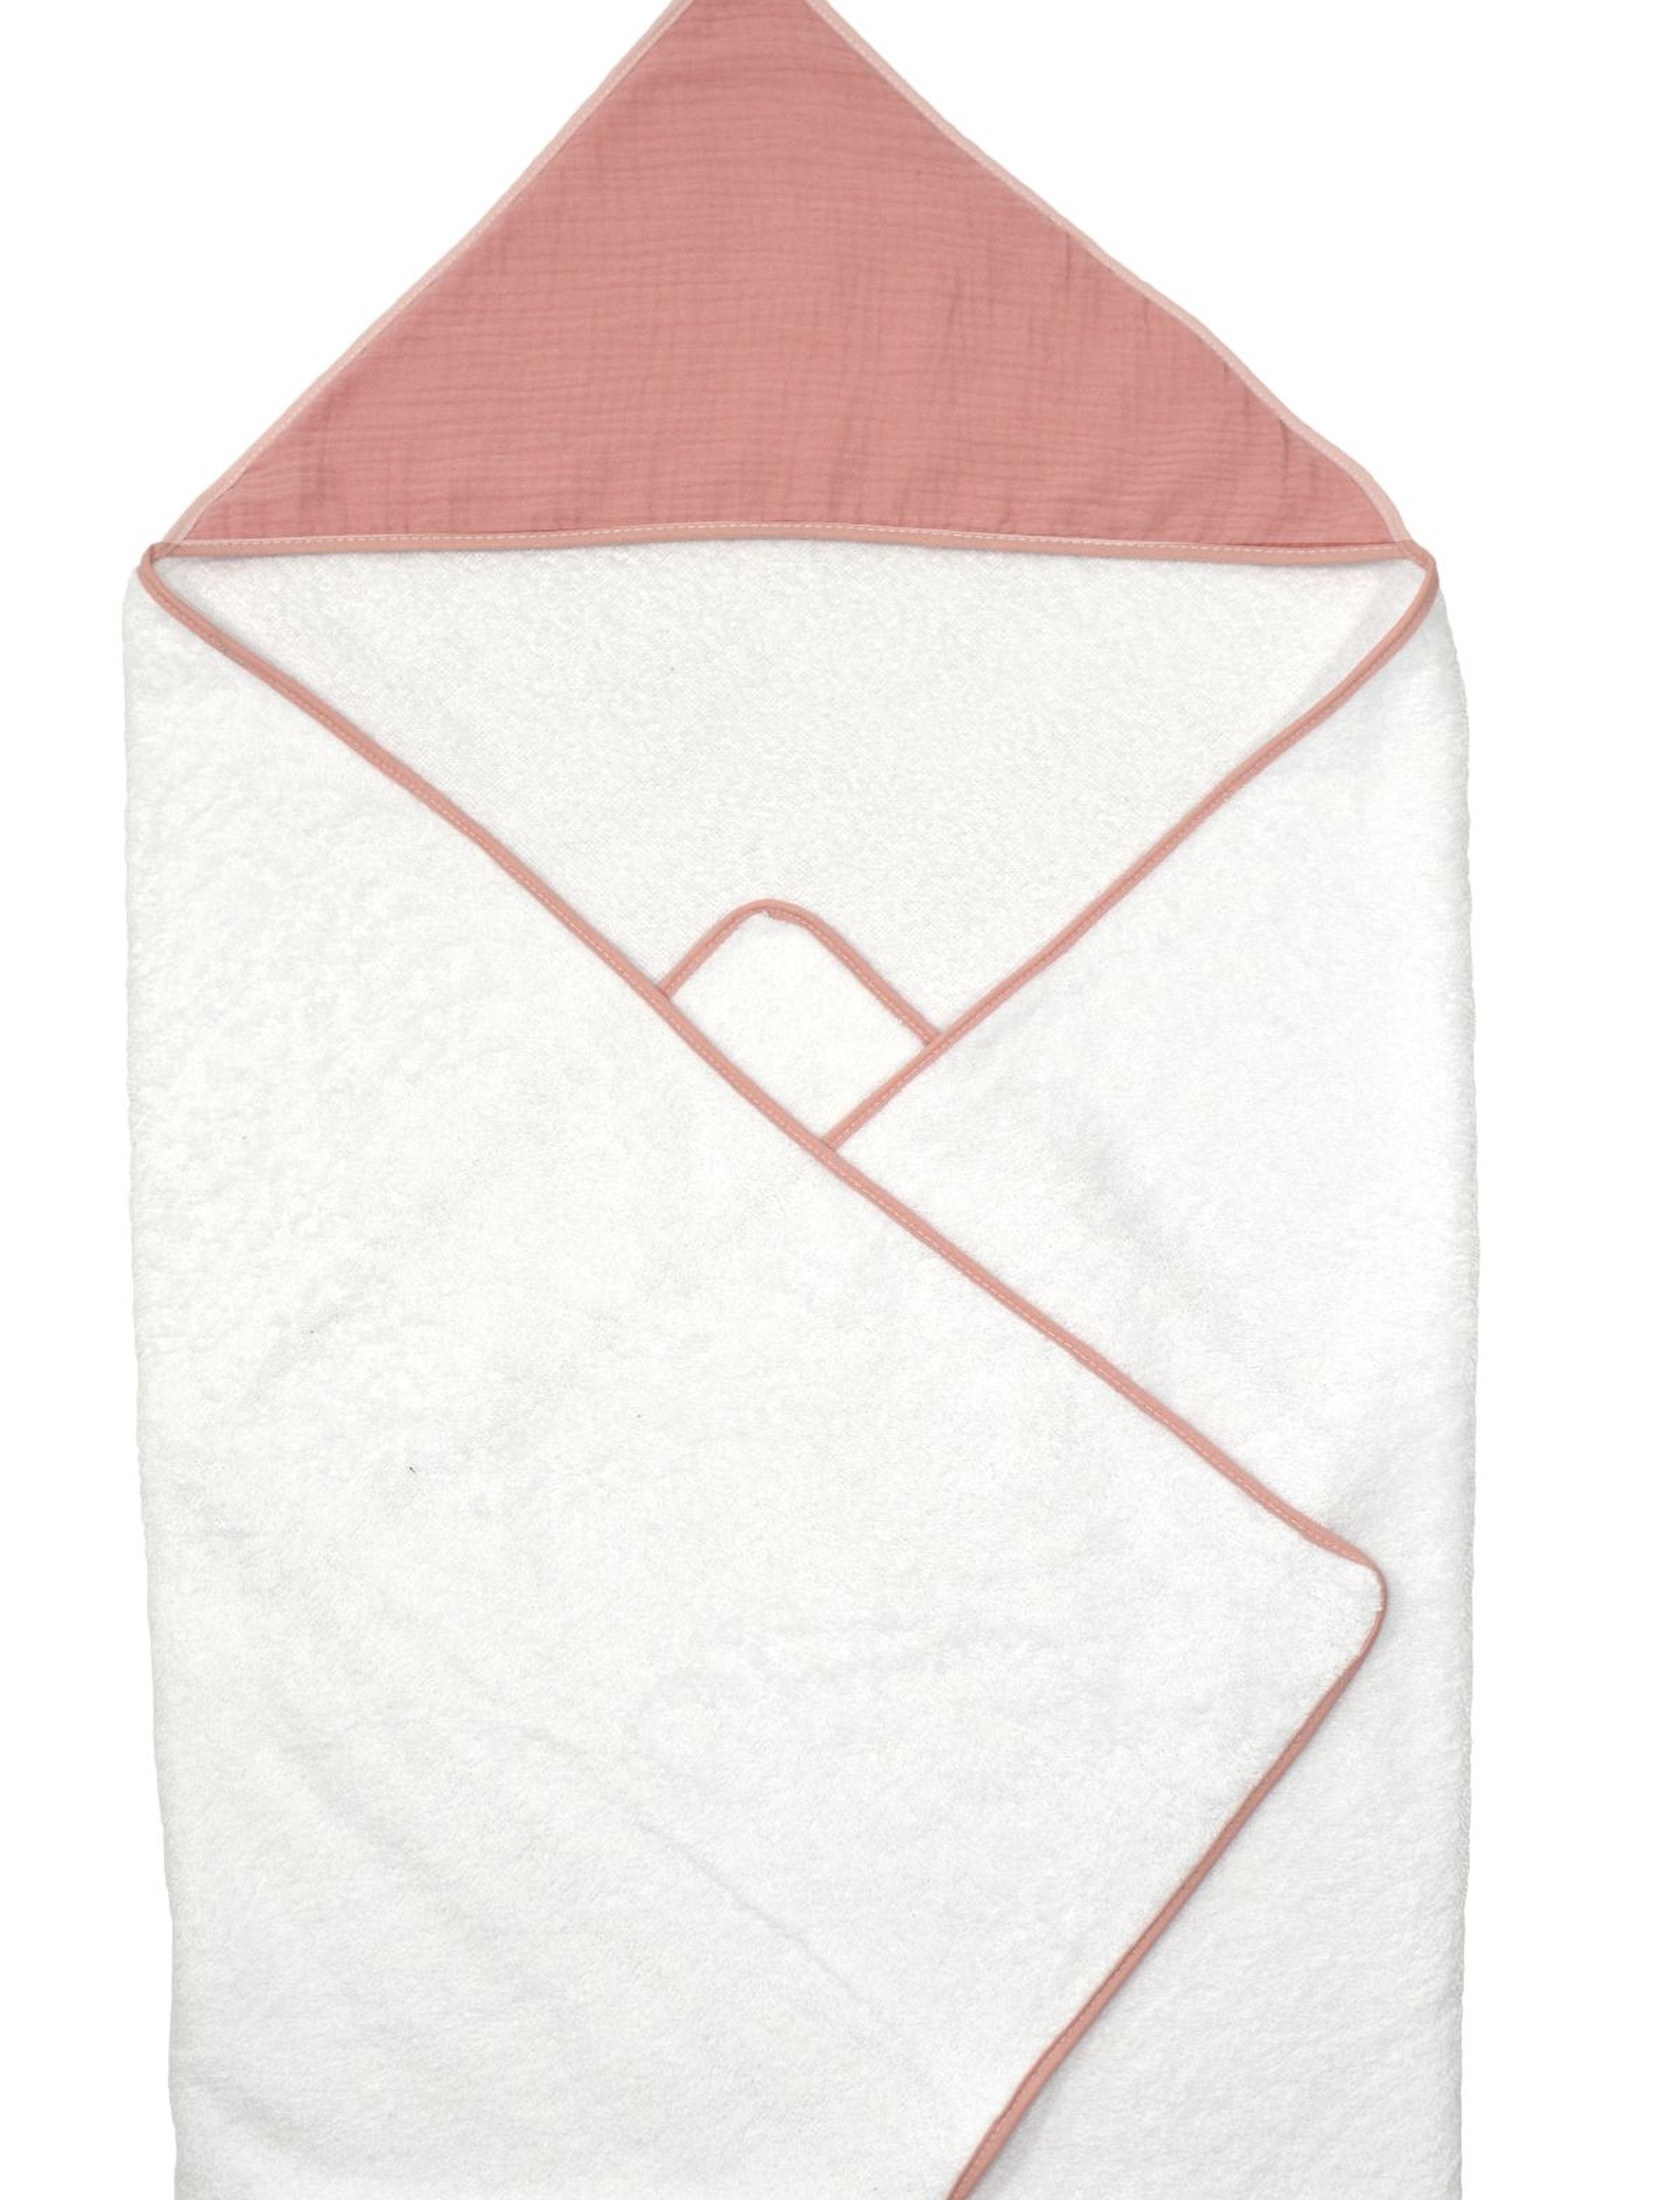 Okrycie kąpielowe dla dziecka 100x100cm - biało-różowe